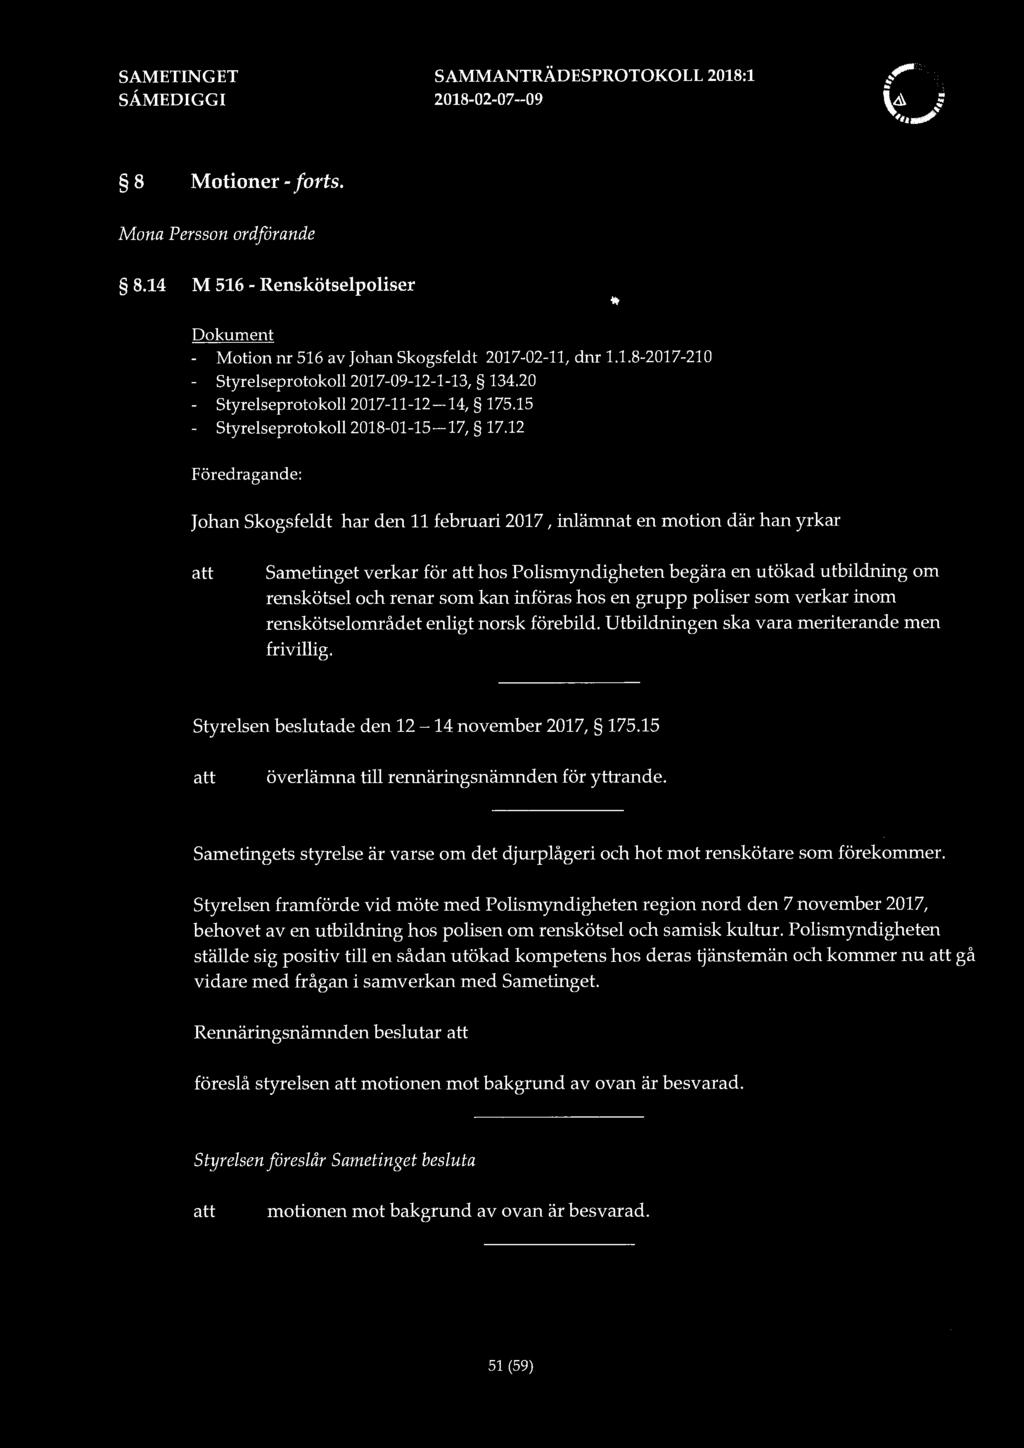 SAMMANTRÄDESPROTOKOLL 2018:1 8 Motioner -forts. Mona Persson ordförande 8.14 M 516 - Renskötselpoliser Dokument - Motion nr 516 av Johan Skogsfeldt 2017-02-11, dnr 1.1.8-2017-210 - Styrelseprotokoll2017-09-12-1-13, 134.